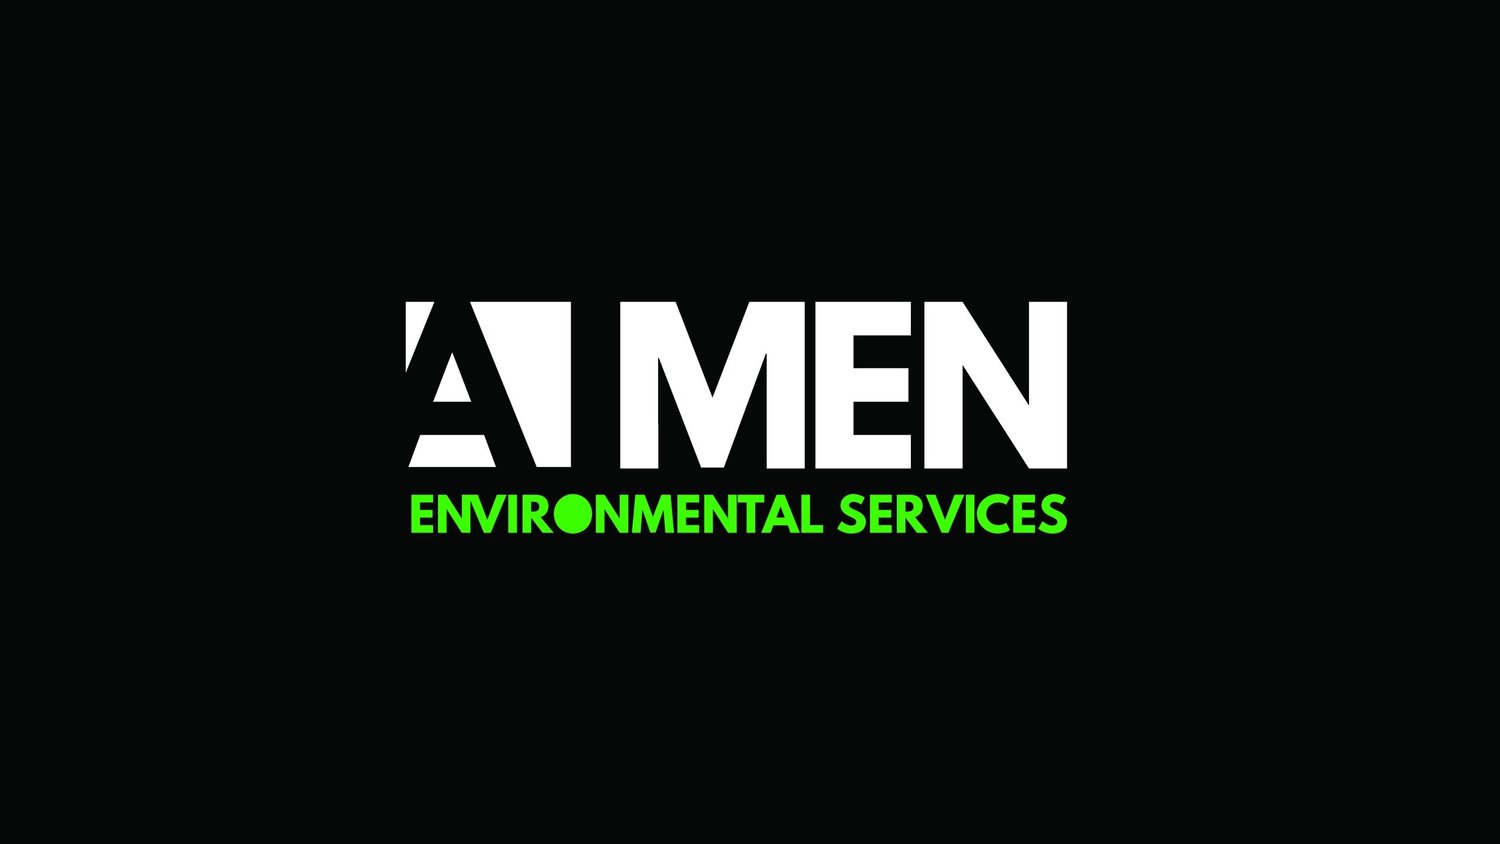 A MEN Environmental